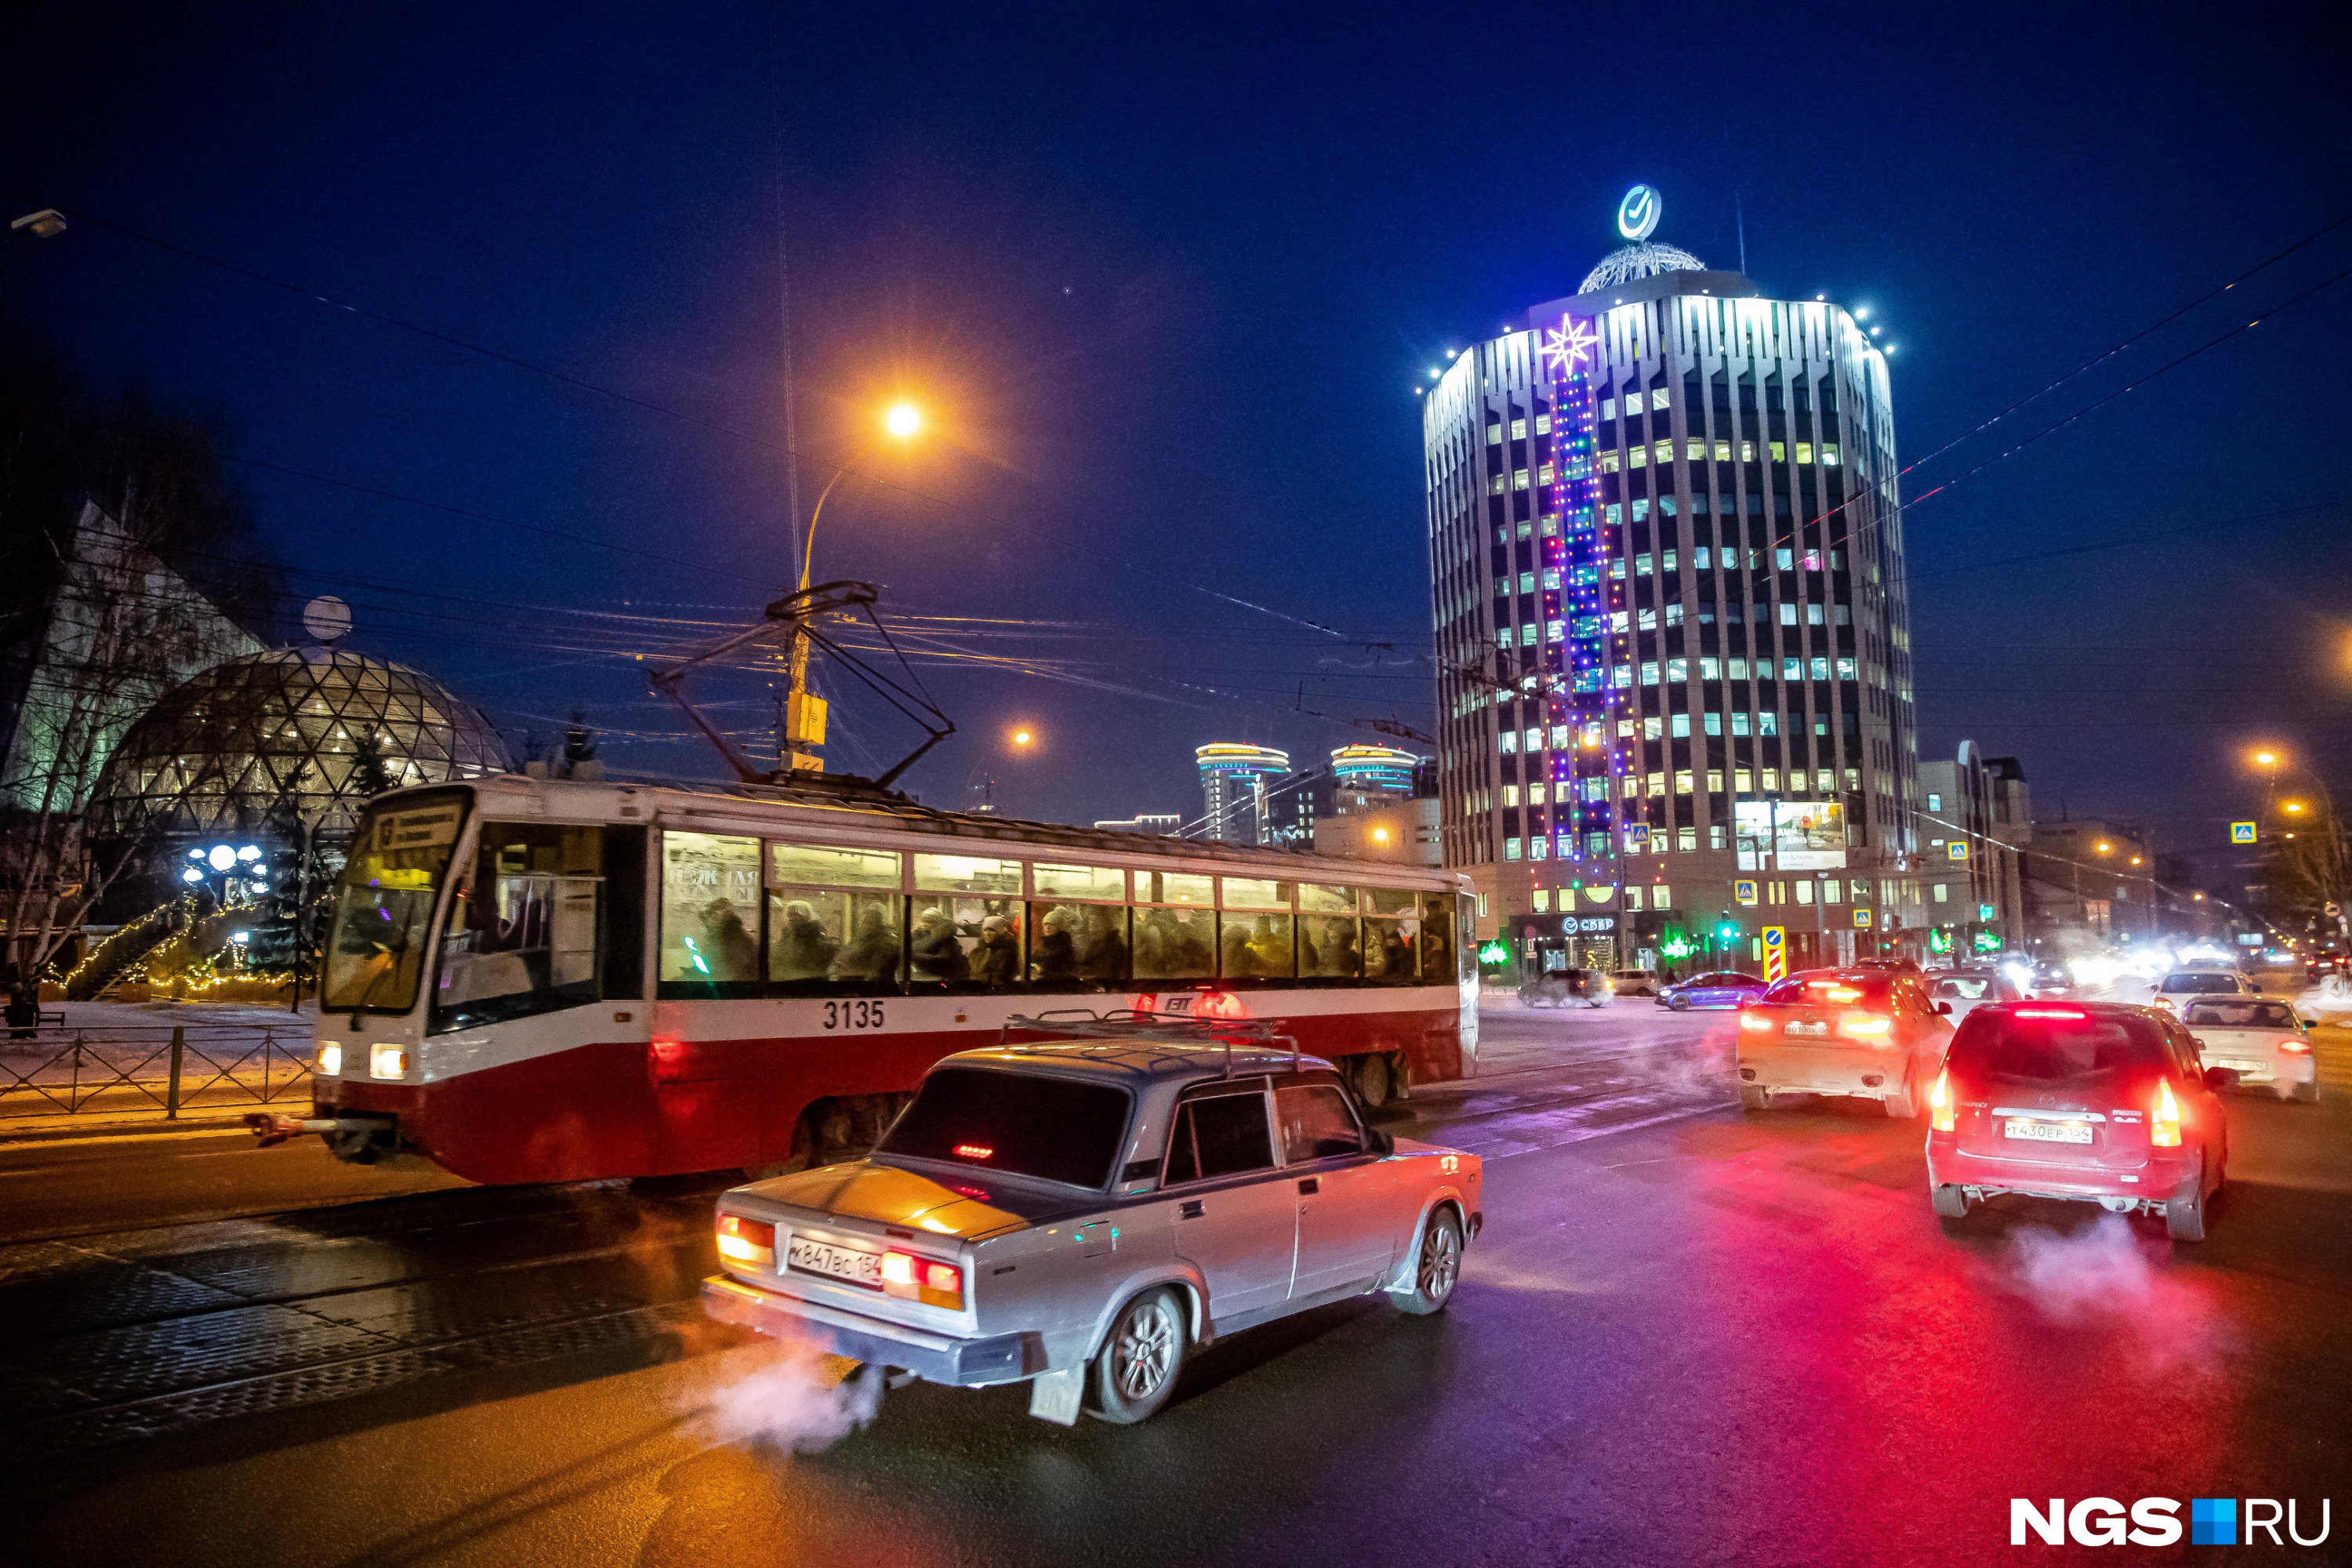 По наблюдениям журналиста НГС, самый холодный вид общественного транспорта в Новосибирске — трамвай